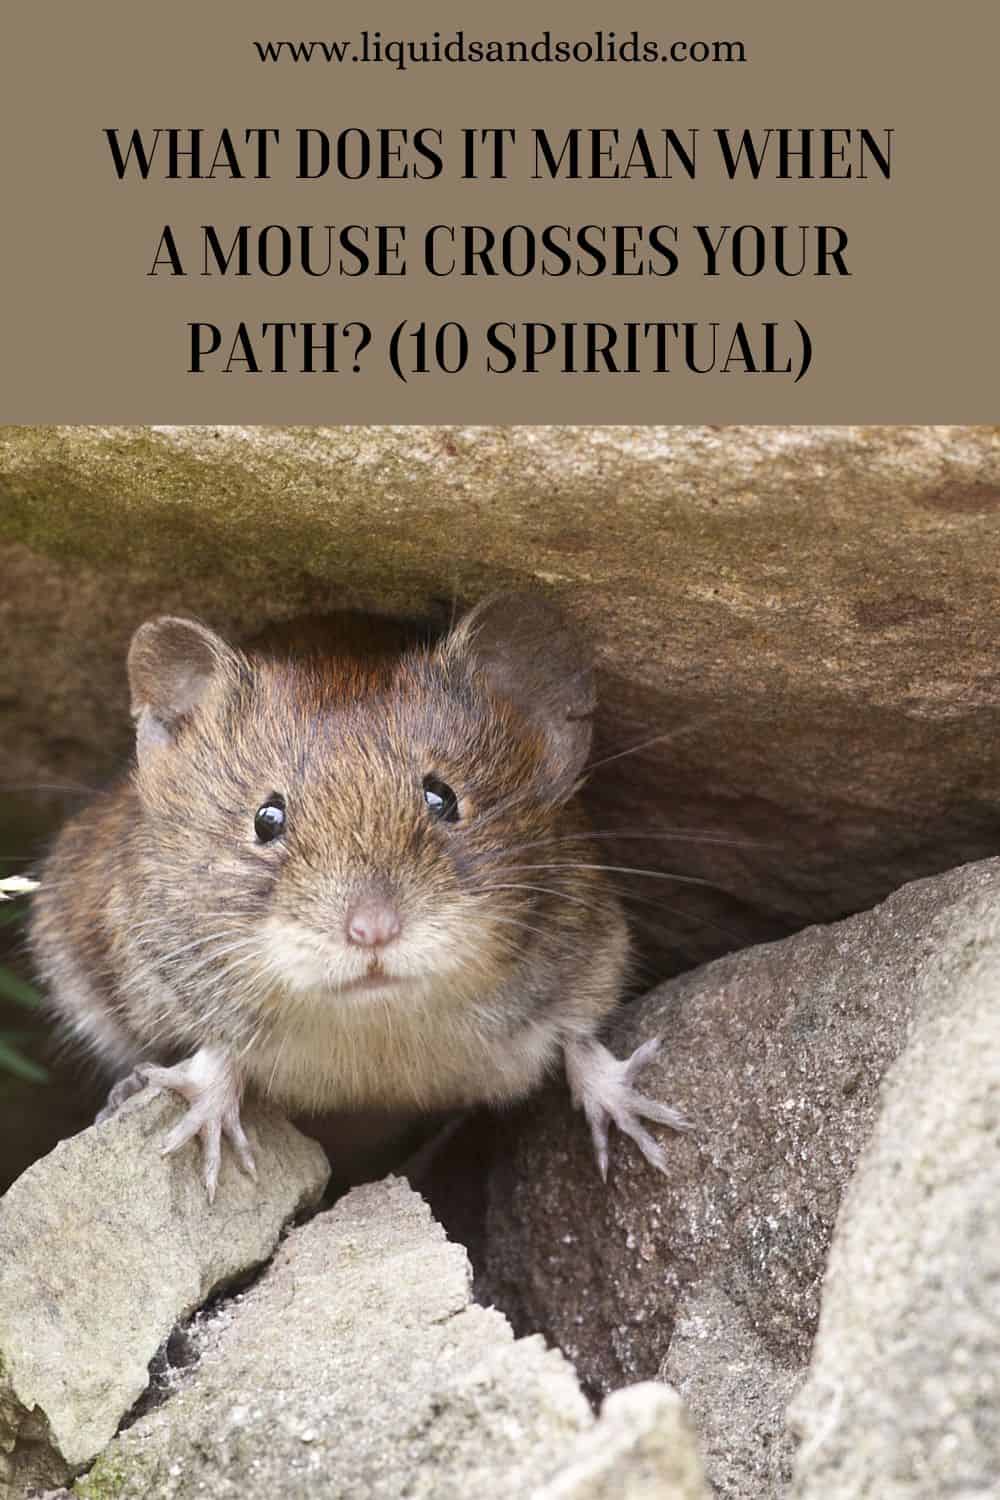  Mida tähendab see, kui hiir ristib teie tee? (10 vaimset tähendust)